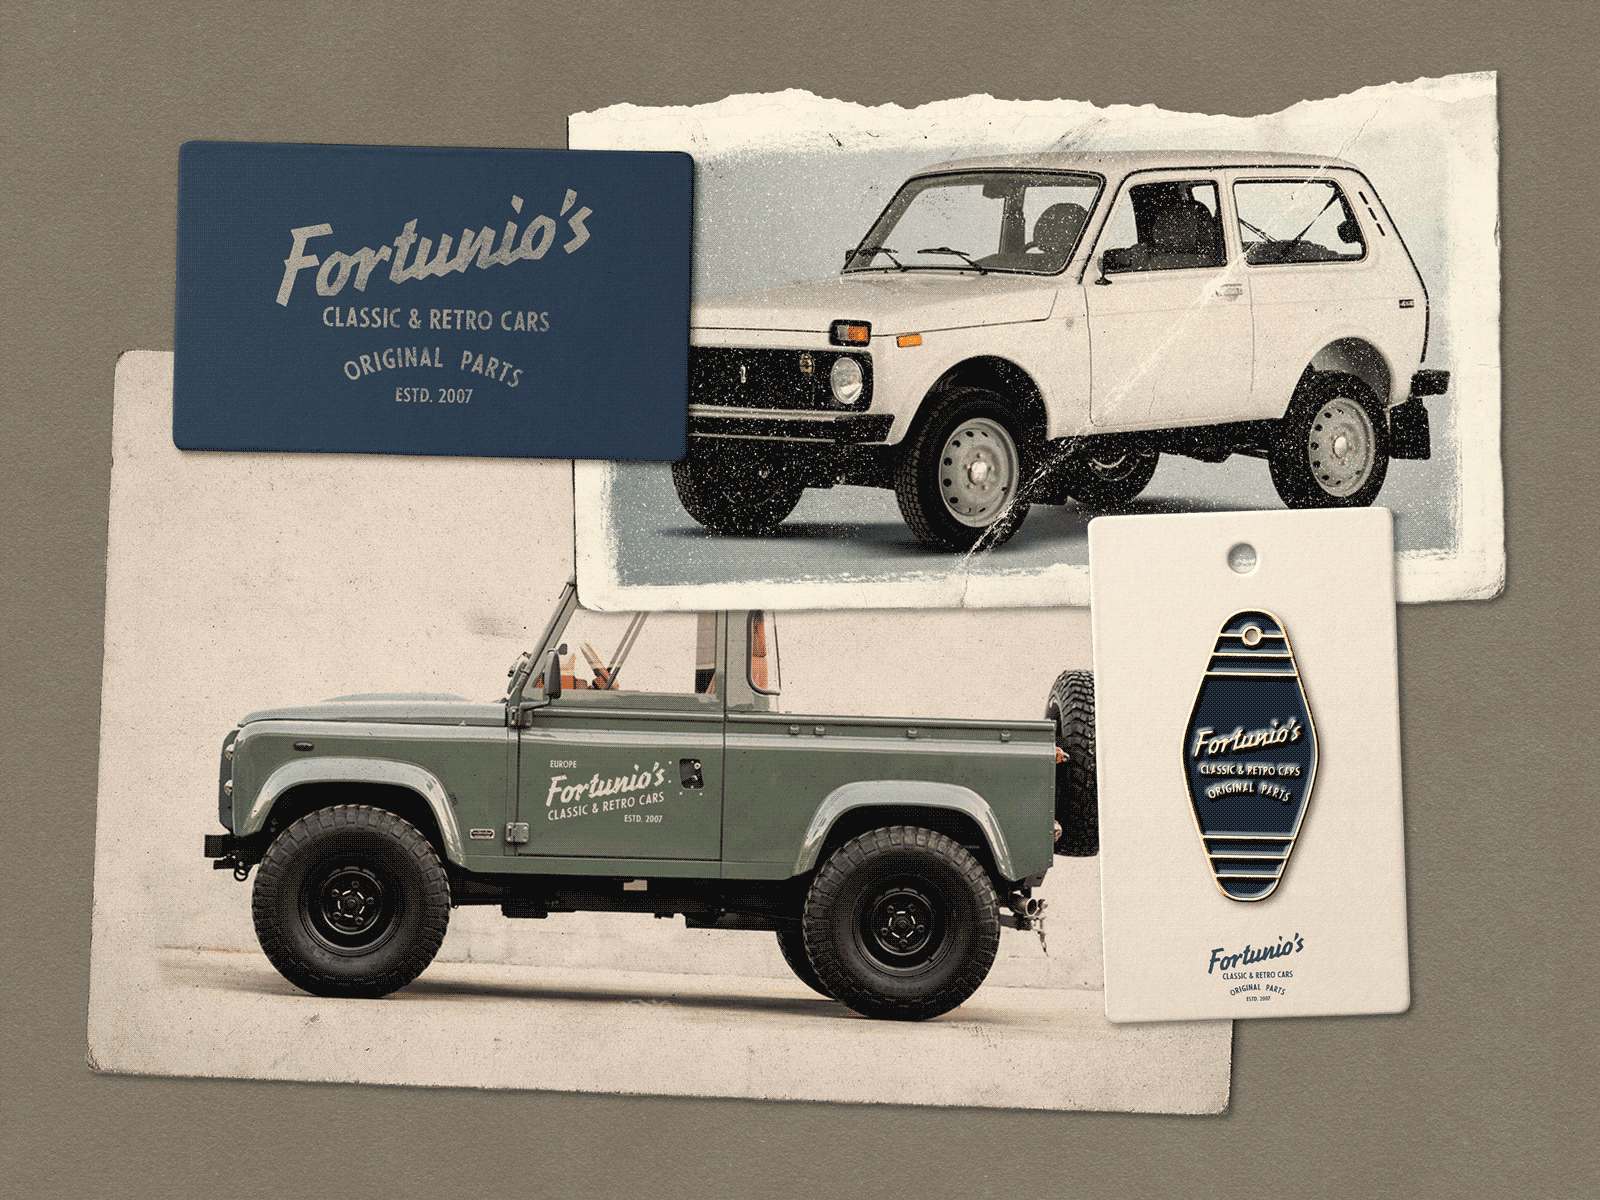 Fortunio's Classic & Retro Cars